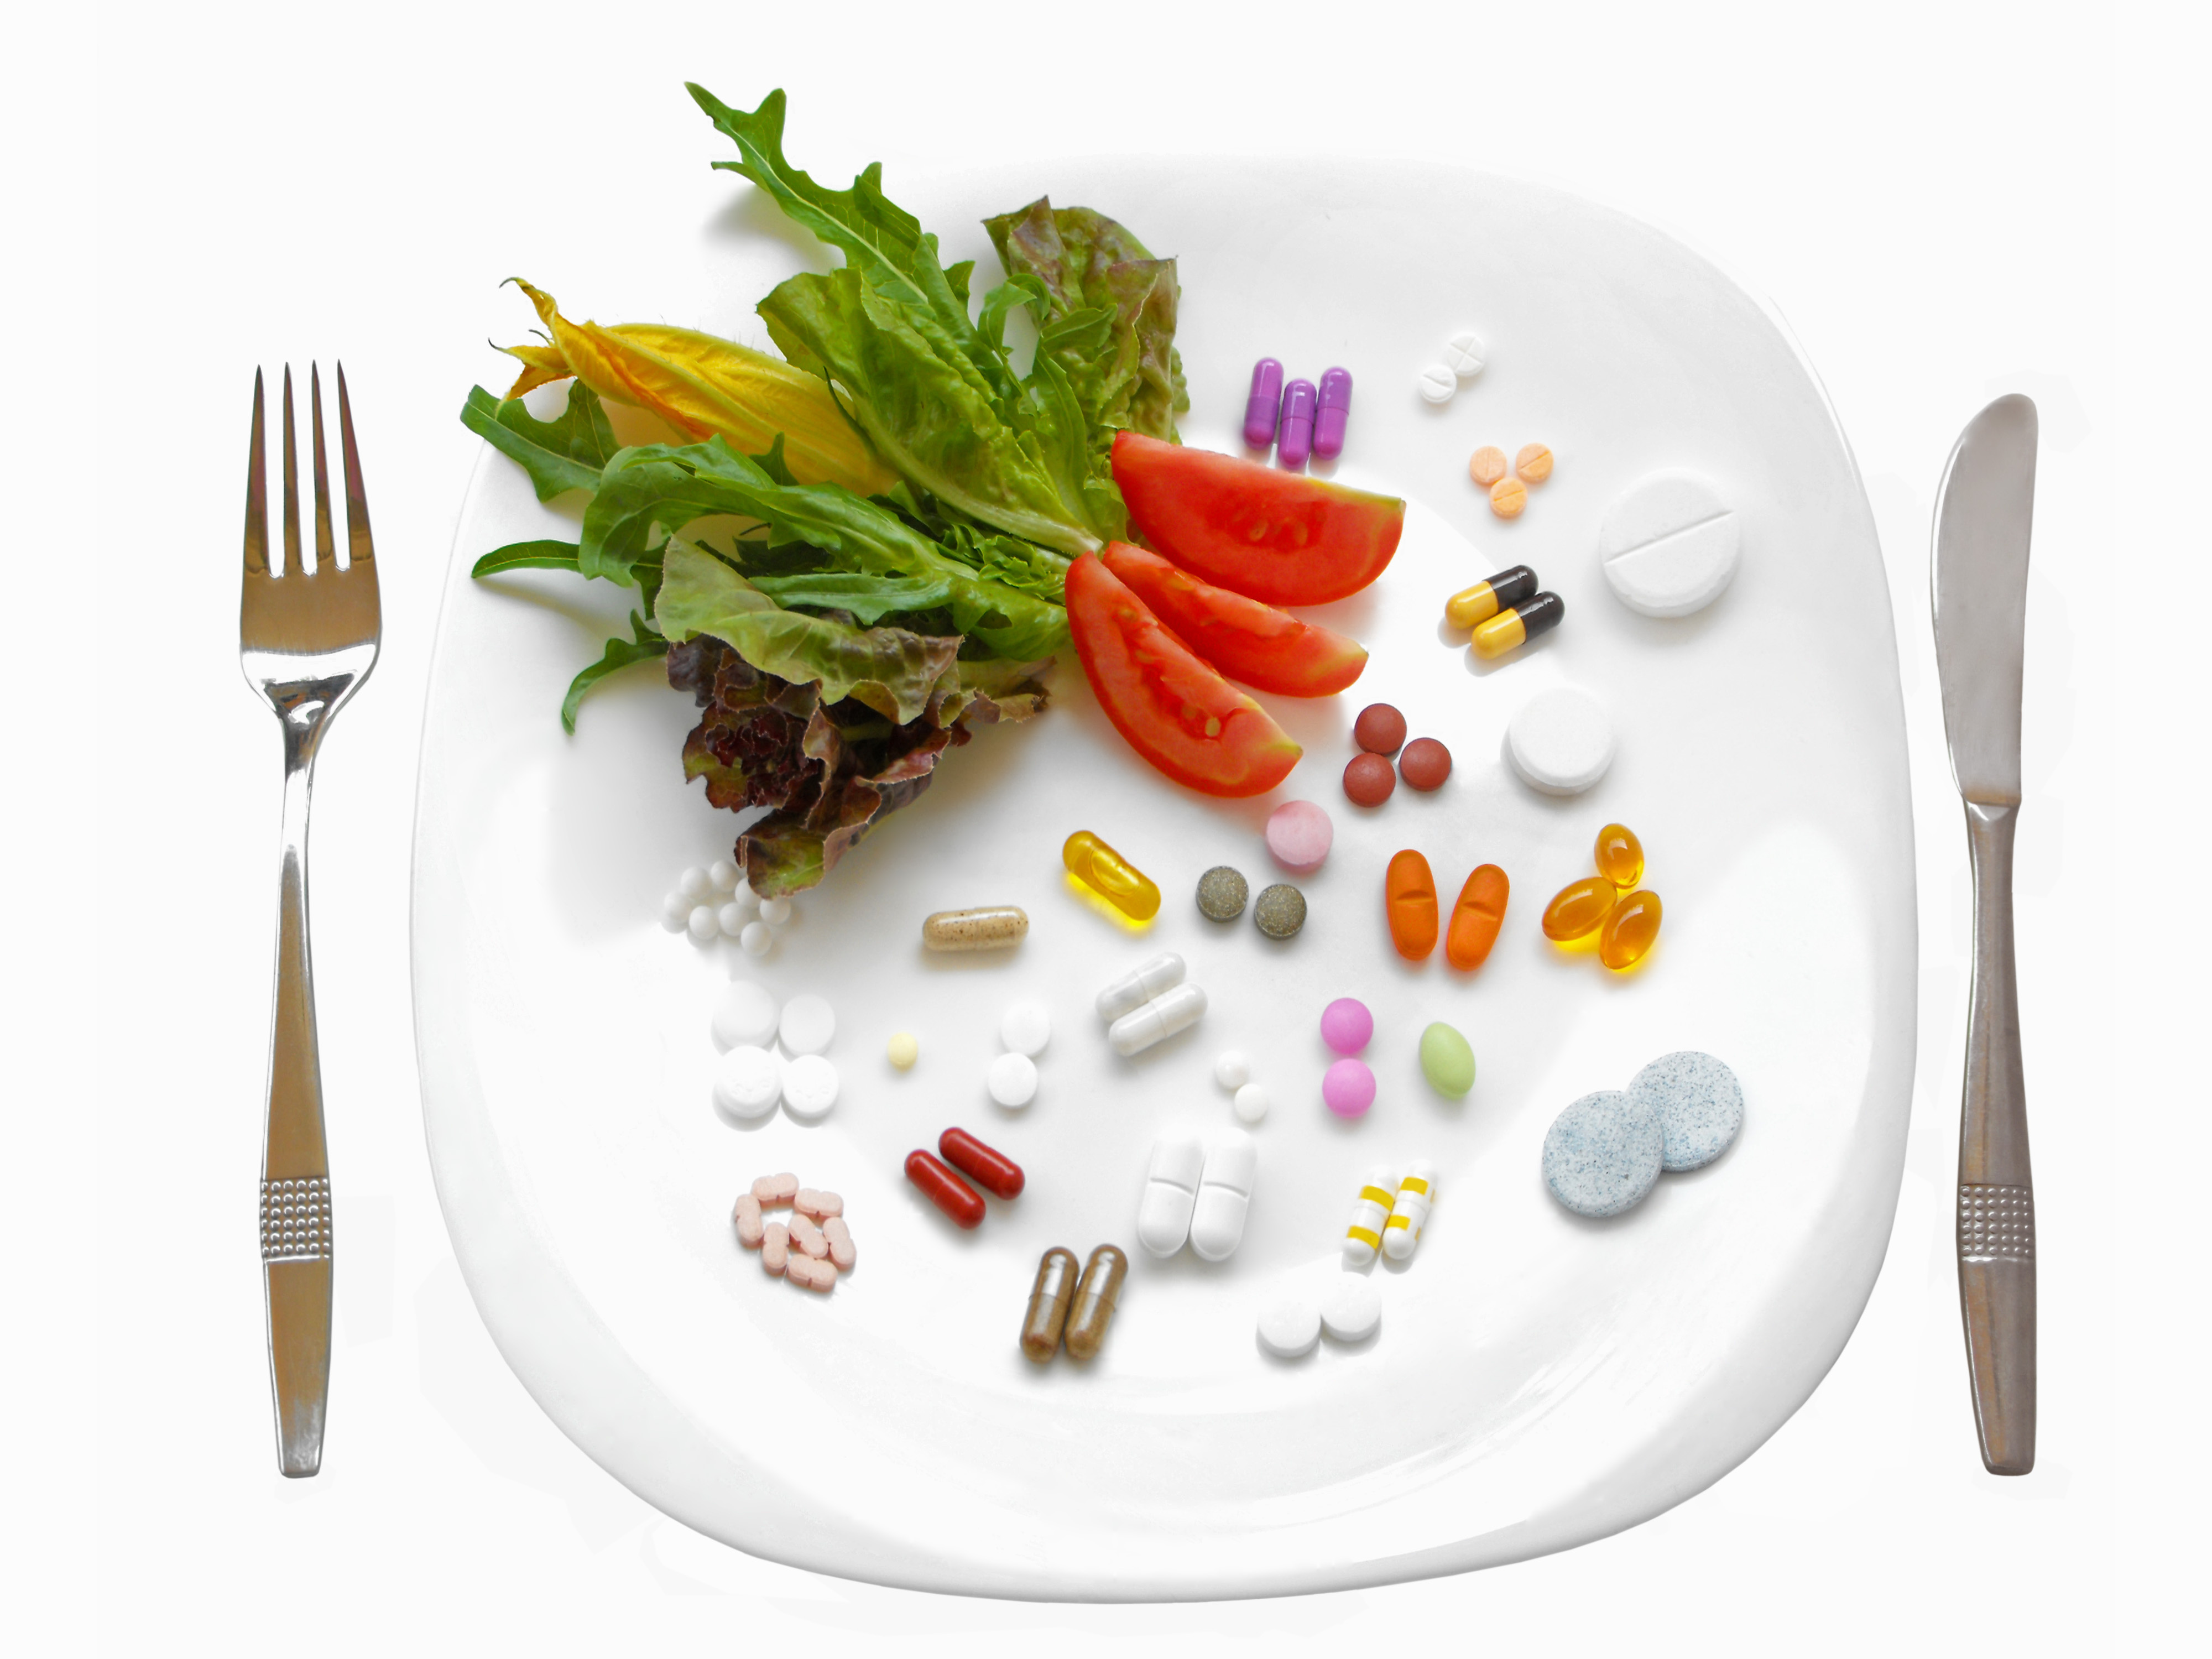 Пищевые добавки бад. Продукты питания. Пищевые и биологически активные добавки. Питание. Витамины на тарелке.